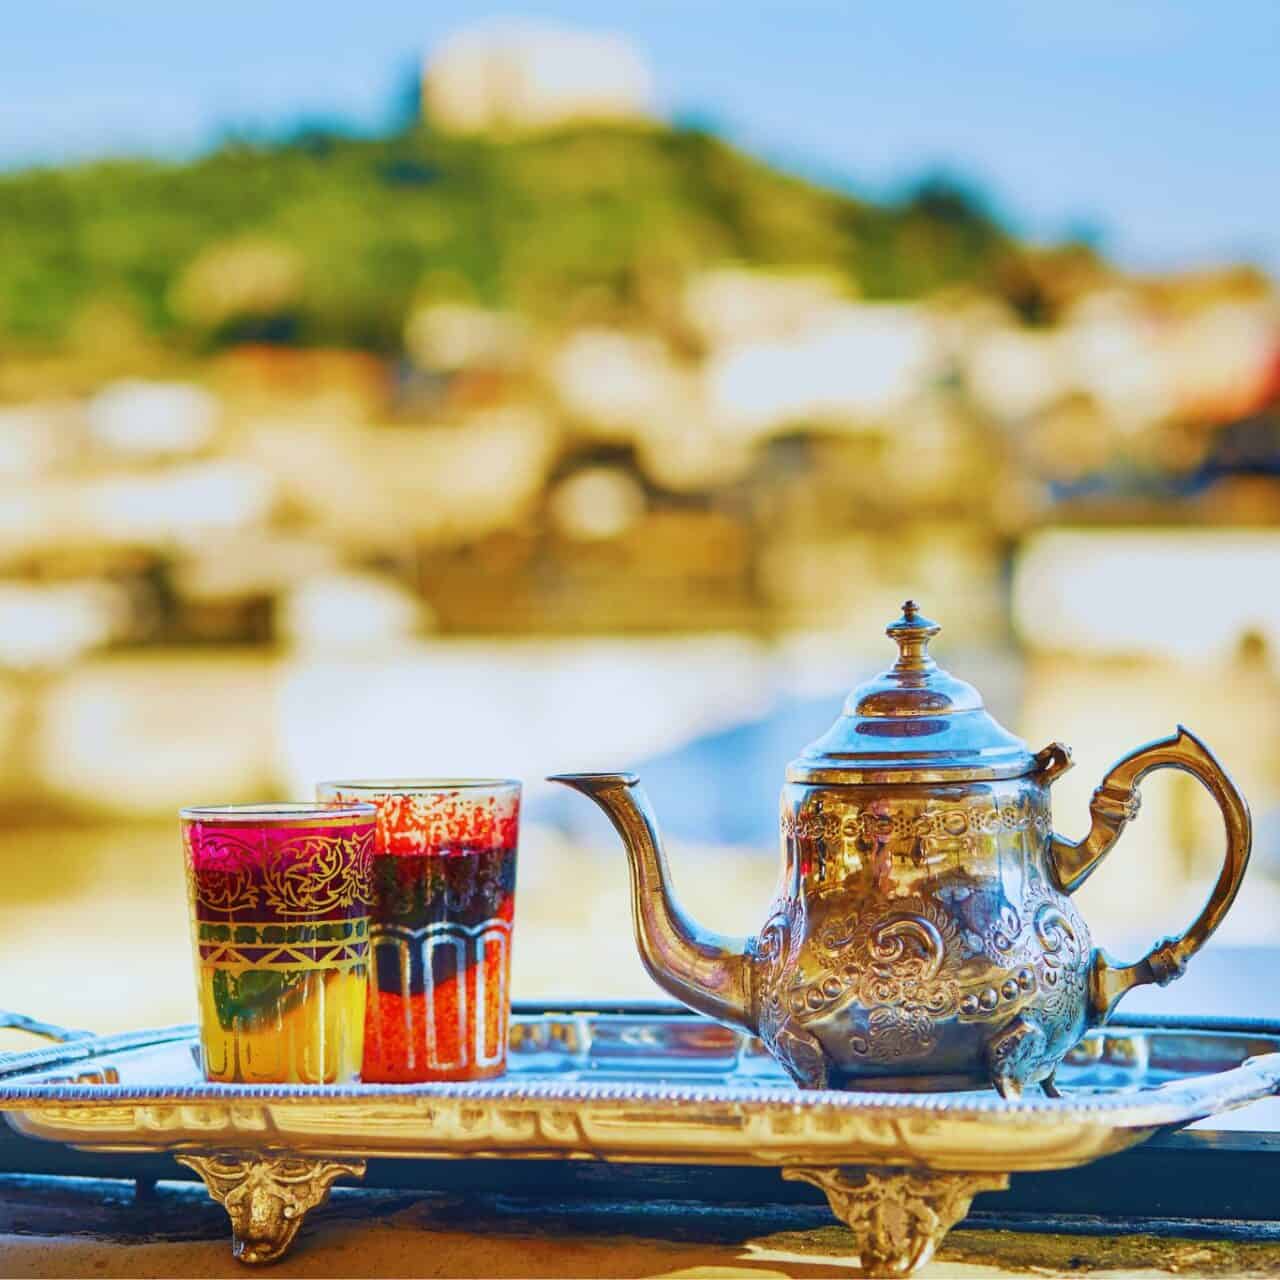 Enjoy mint tea in Morocco